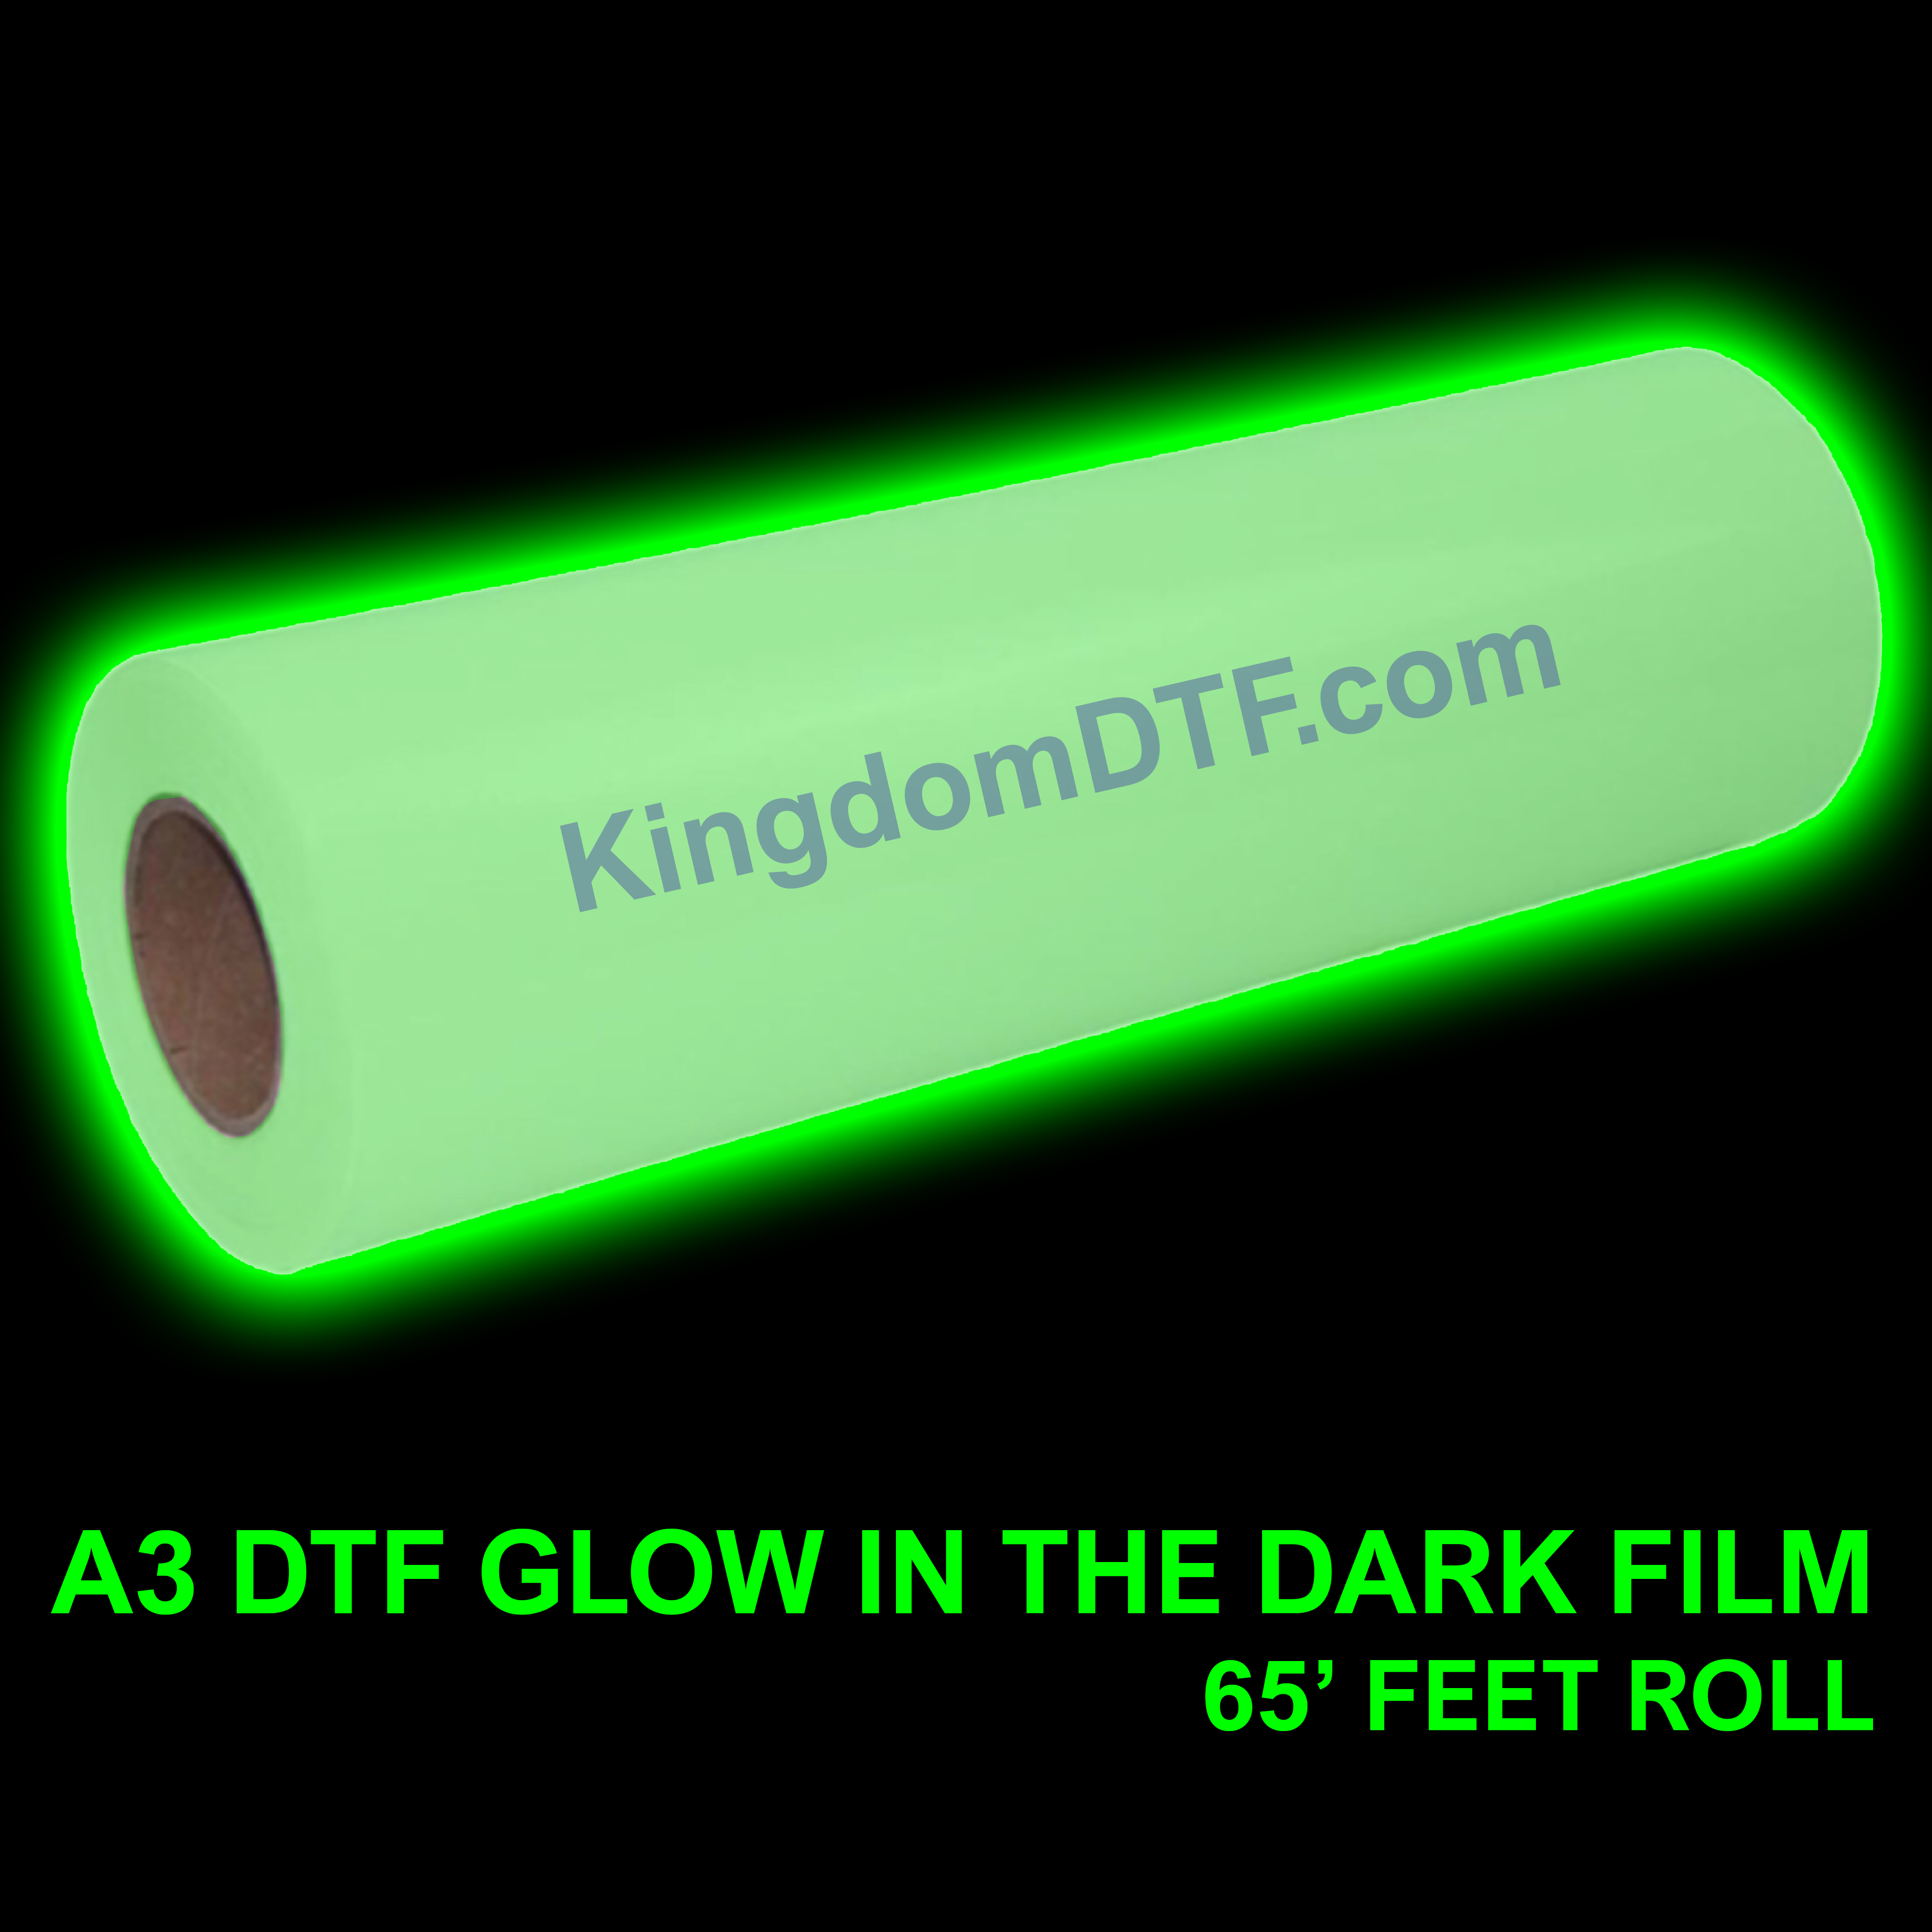 DTF Glow In The Dark Film Roll 12" x 65' Feet (20m) - Cold Peel - KingdomDTF.com